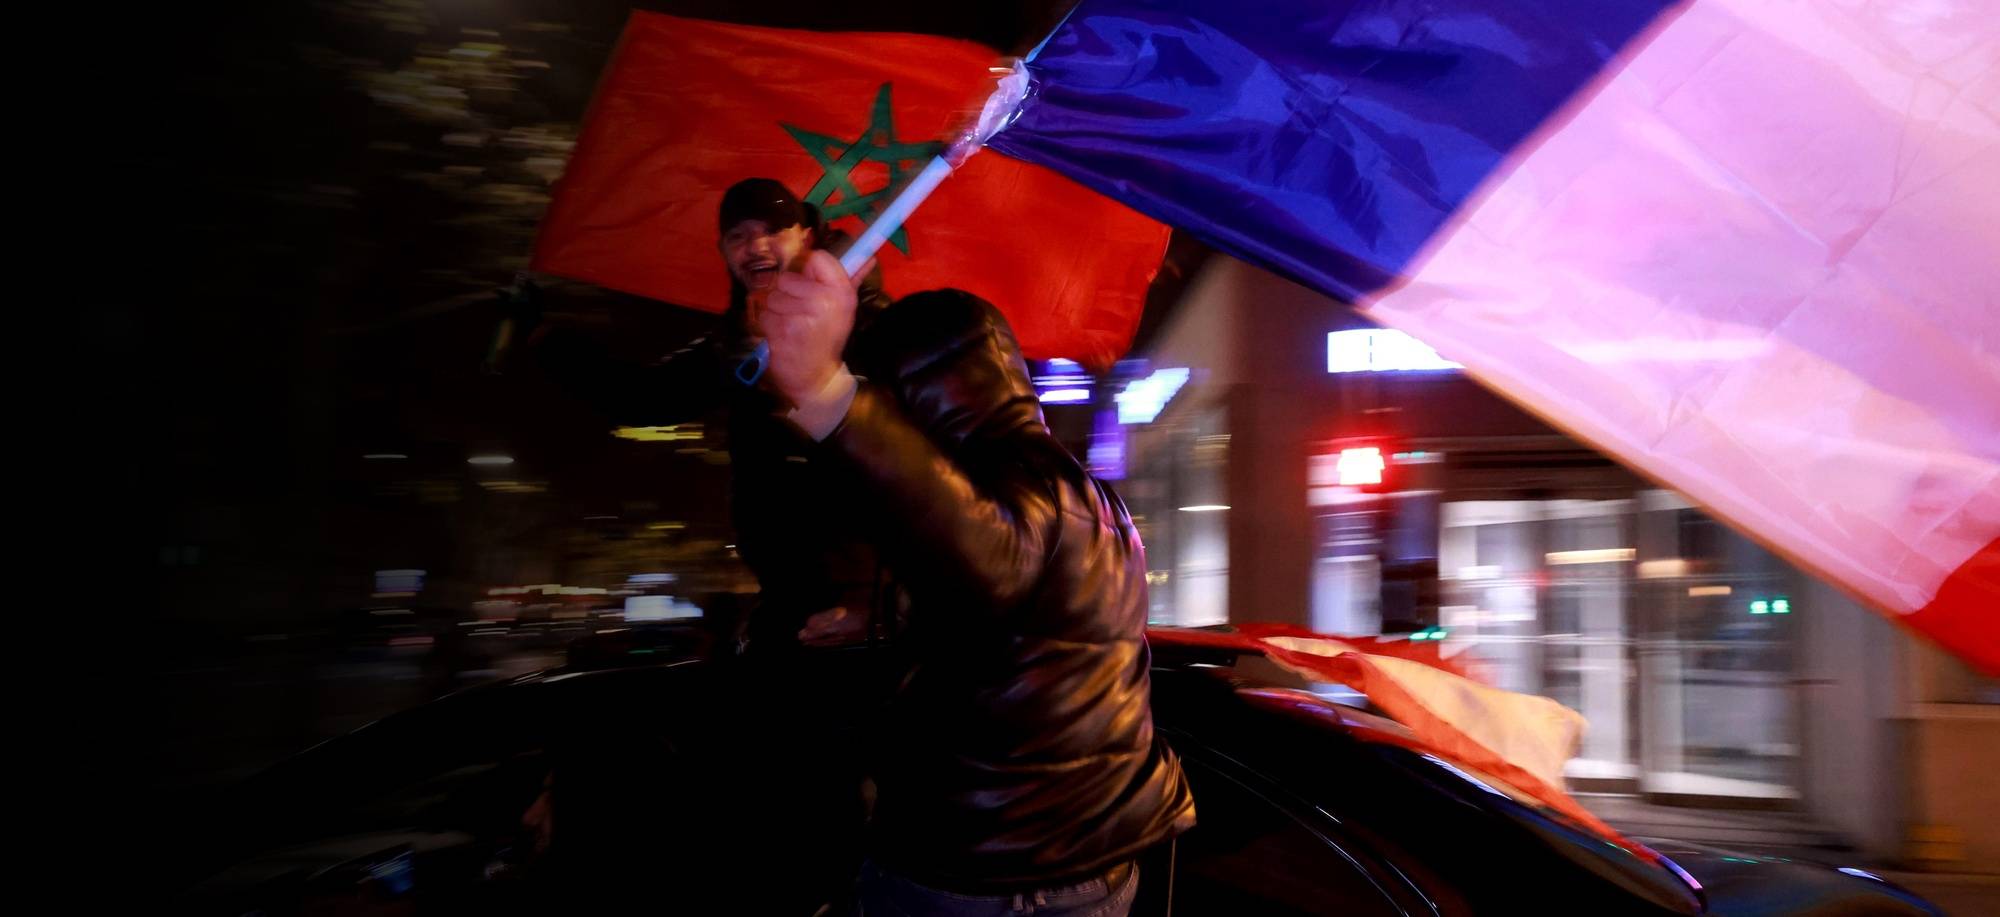 Mondial 2022 - France-Maroc : hissez haut les deux drapeaux !